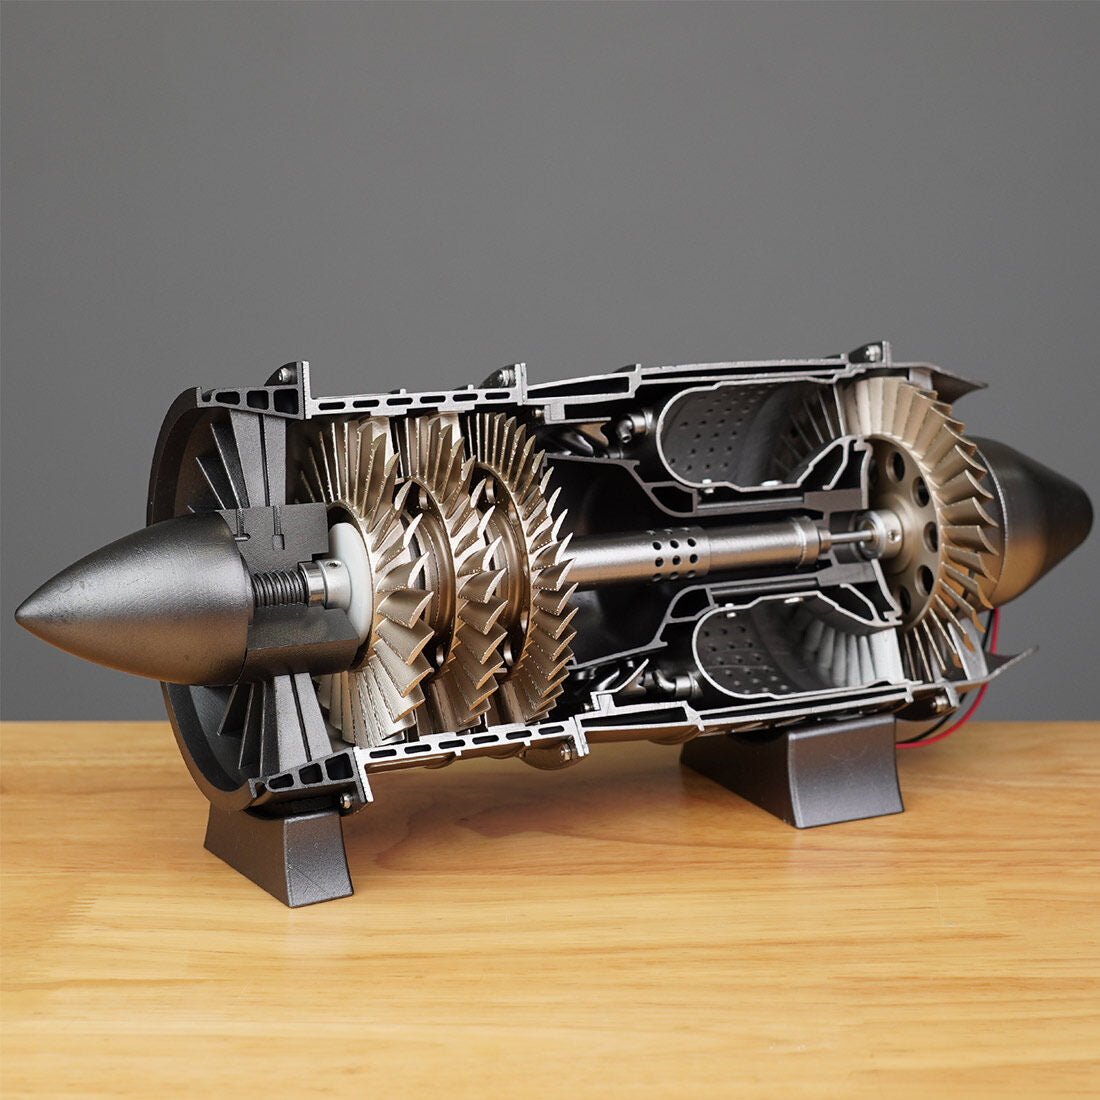 WP-85 1/3 Scale Turbojet DIY Aircraft Engine Model -100 Pcs - Build Your Own Turbojet Engine enginediyshop